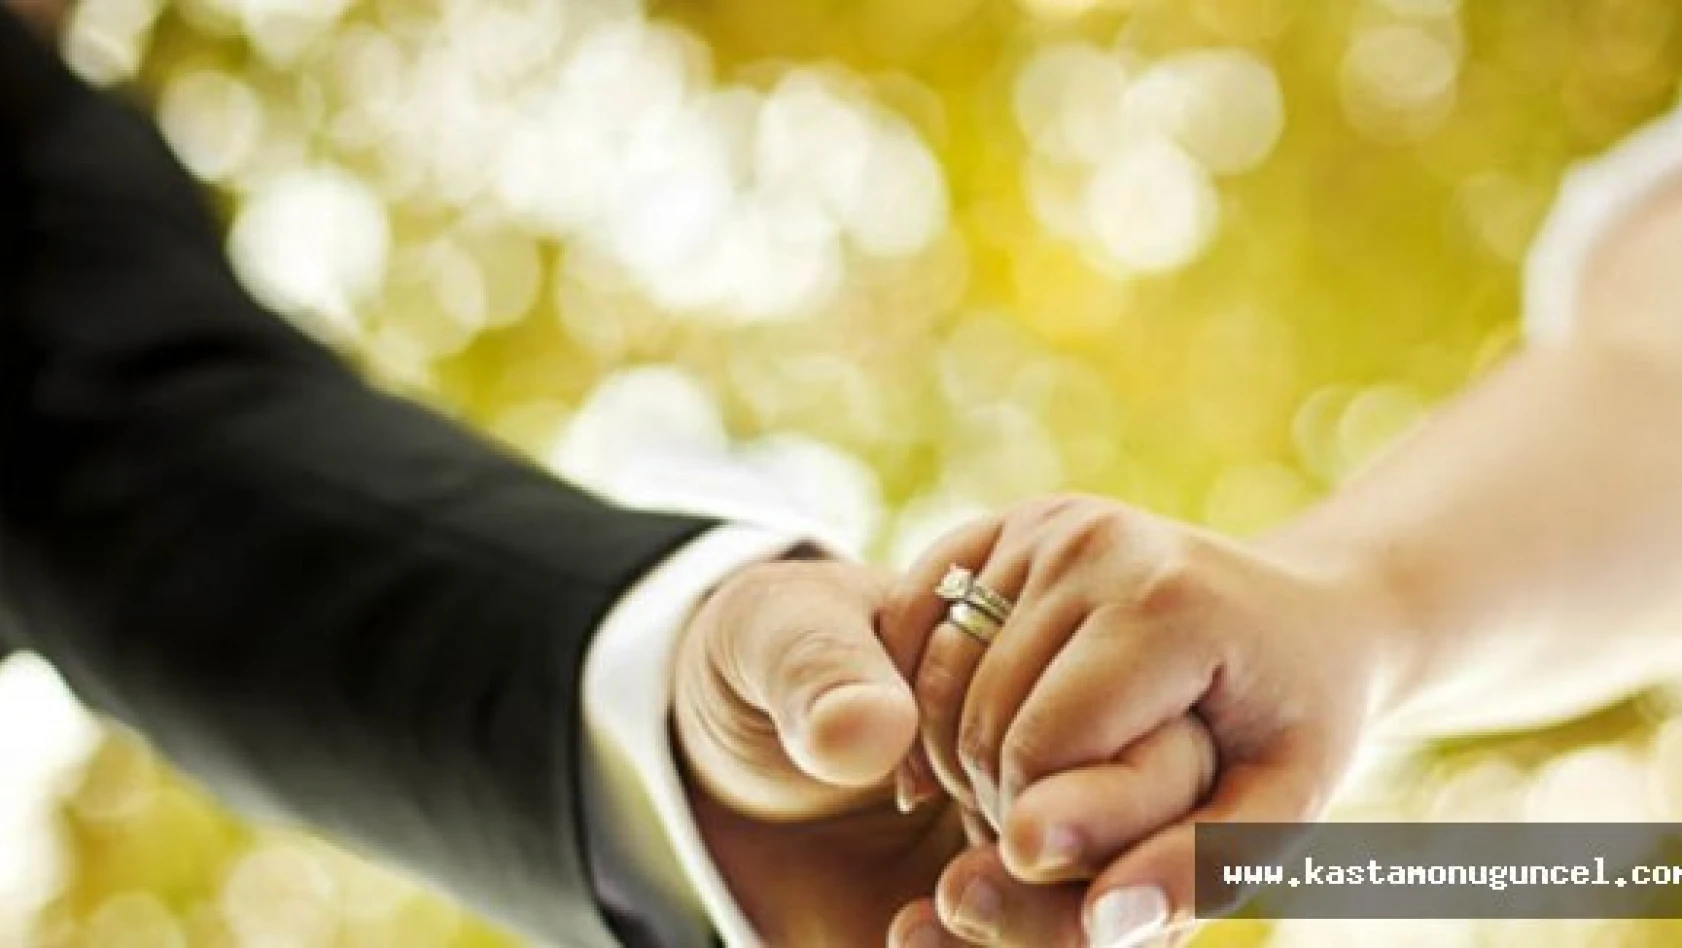 Evliliğinizi korumak için 10 altın kural!